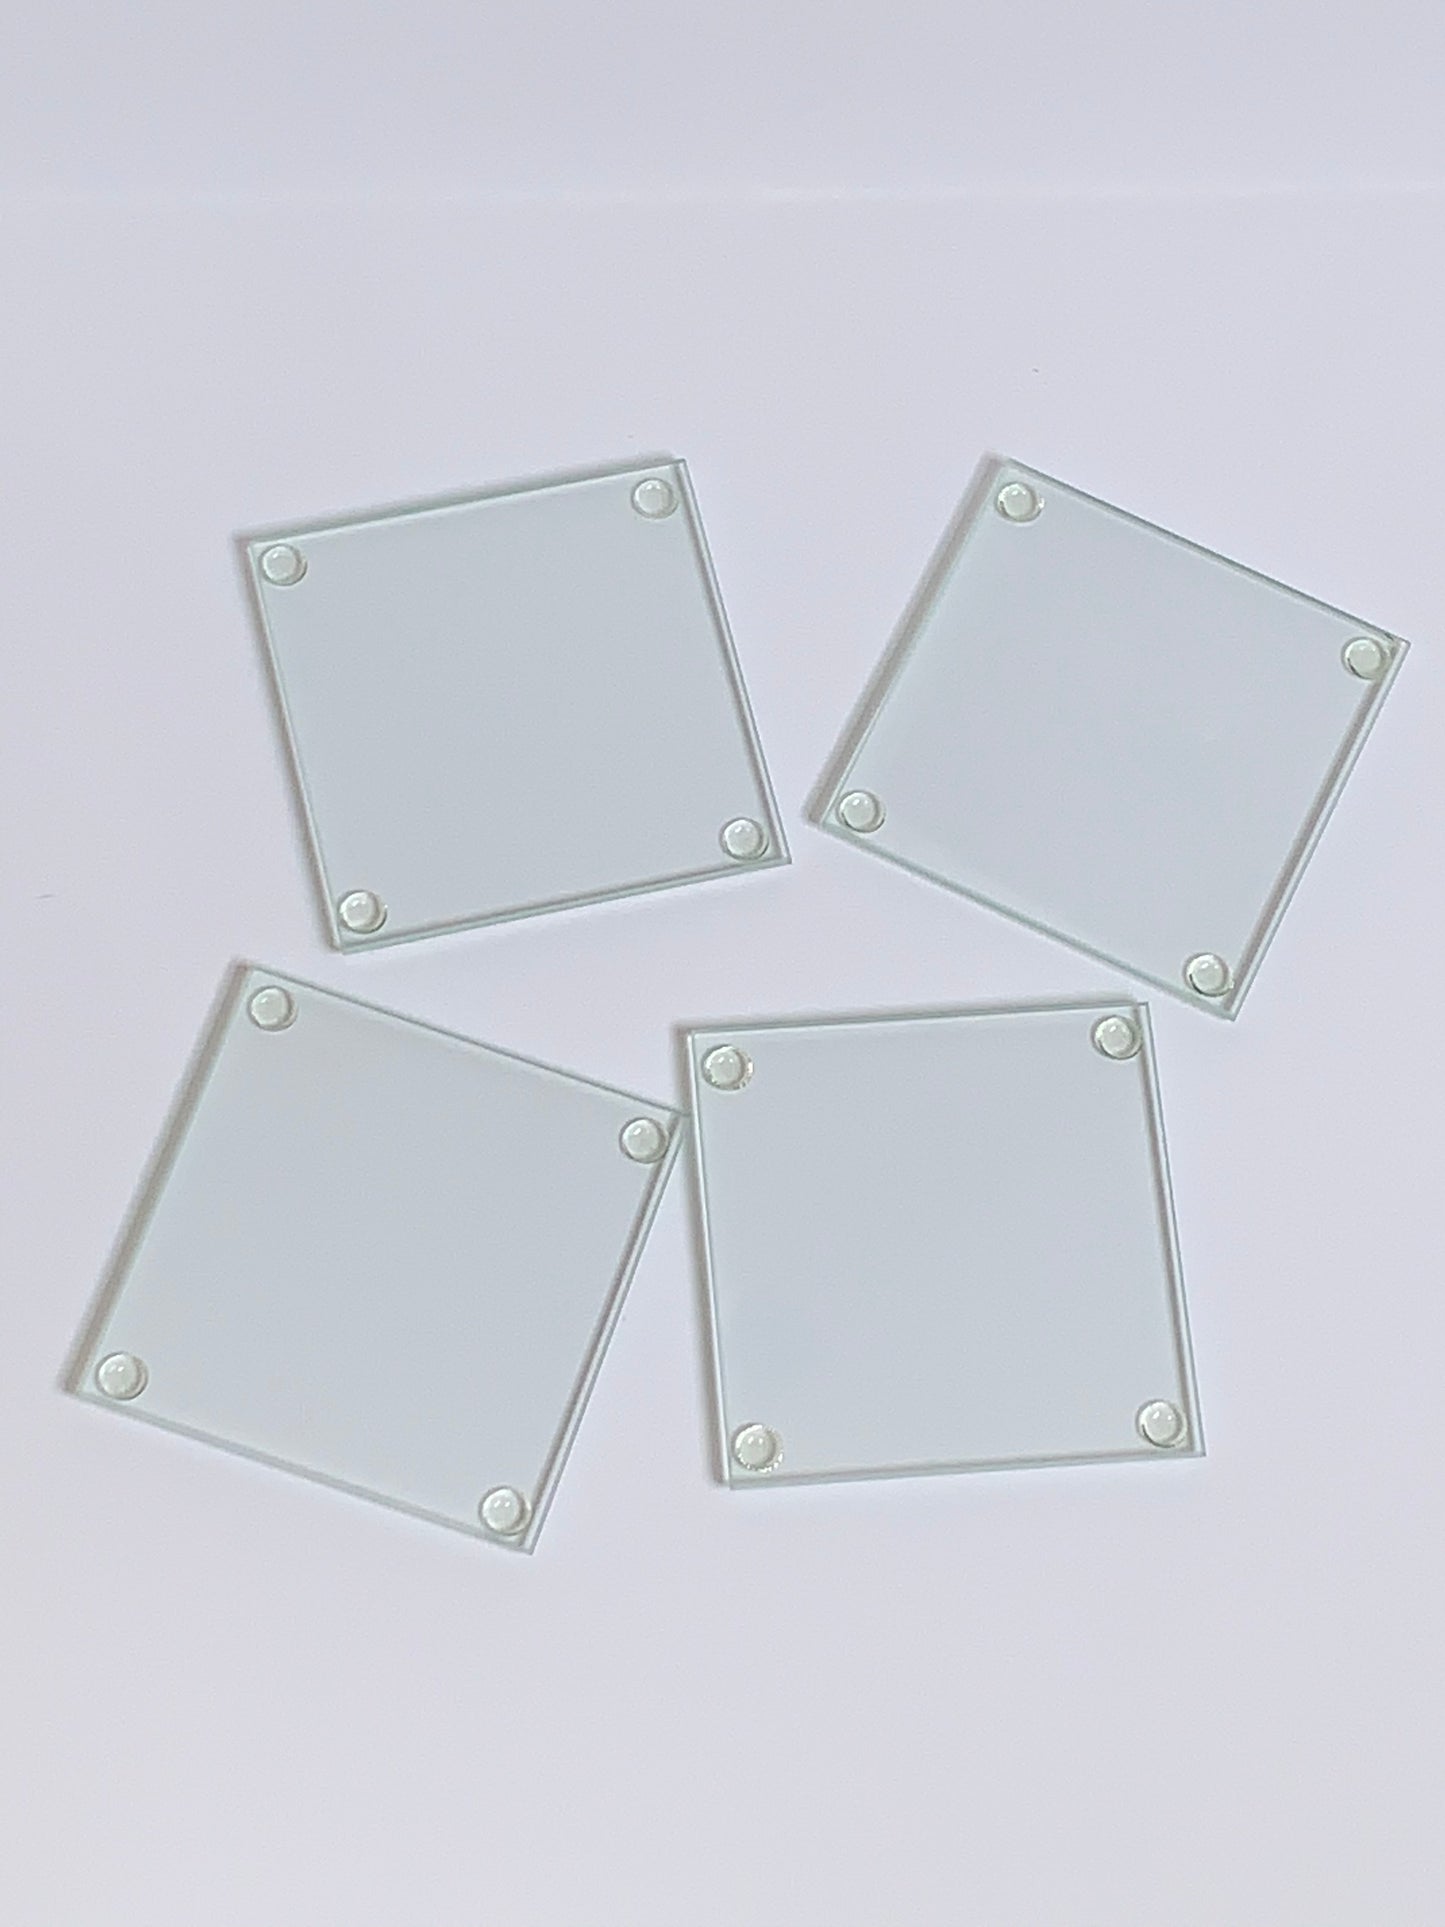 Square Glass Coaster (4 piece set)